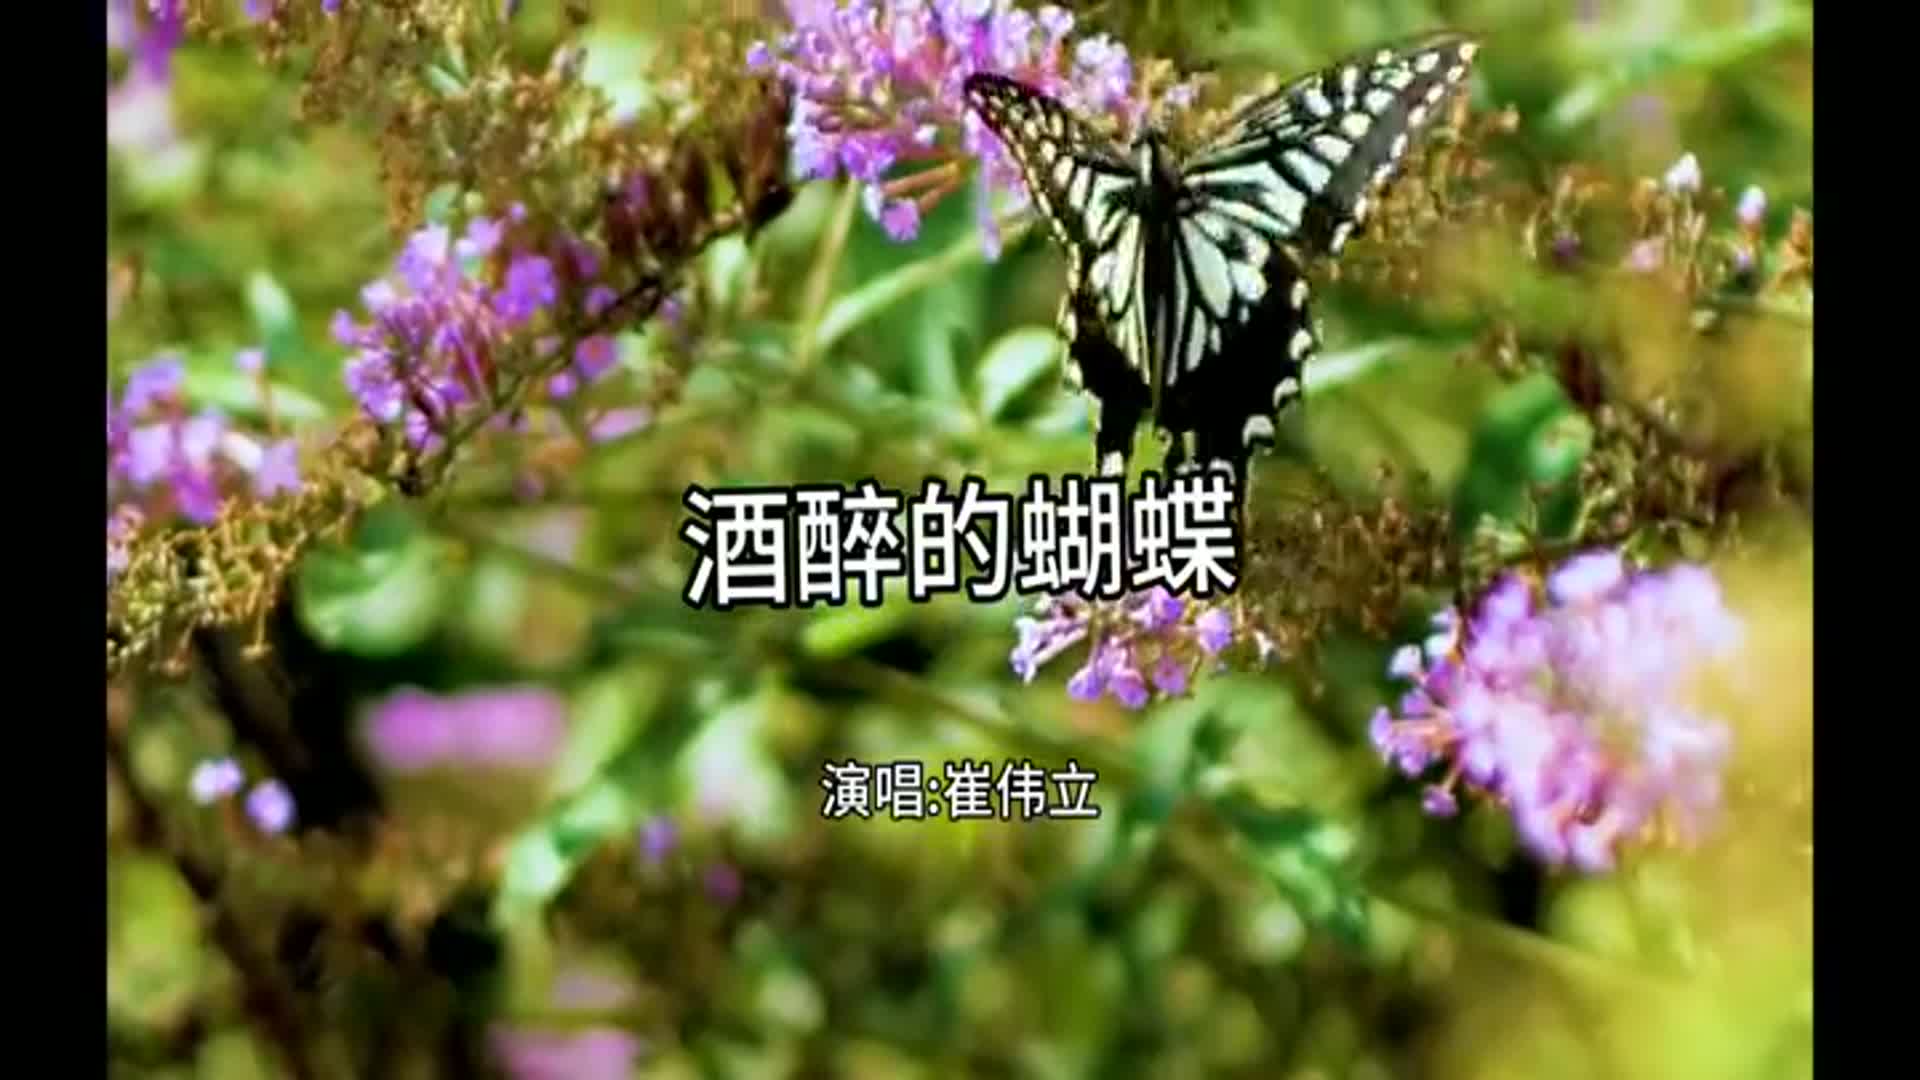 《酒醉的蝴蝶》这首歌,唱出了人生的魅力,非常好听!